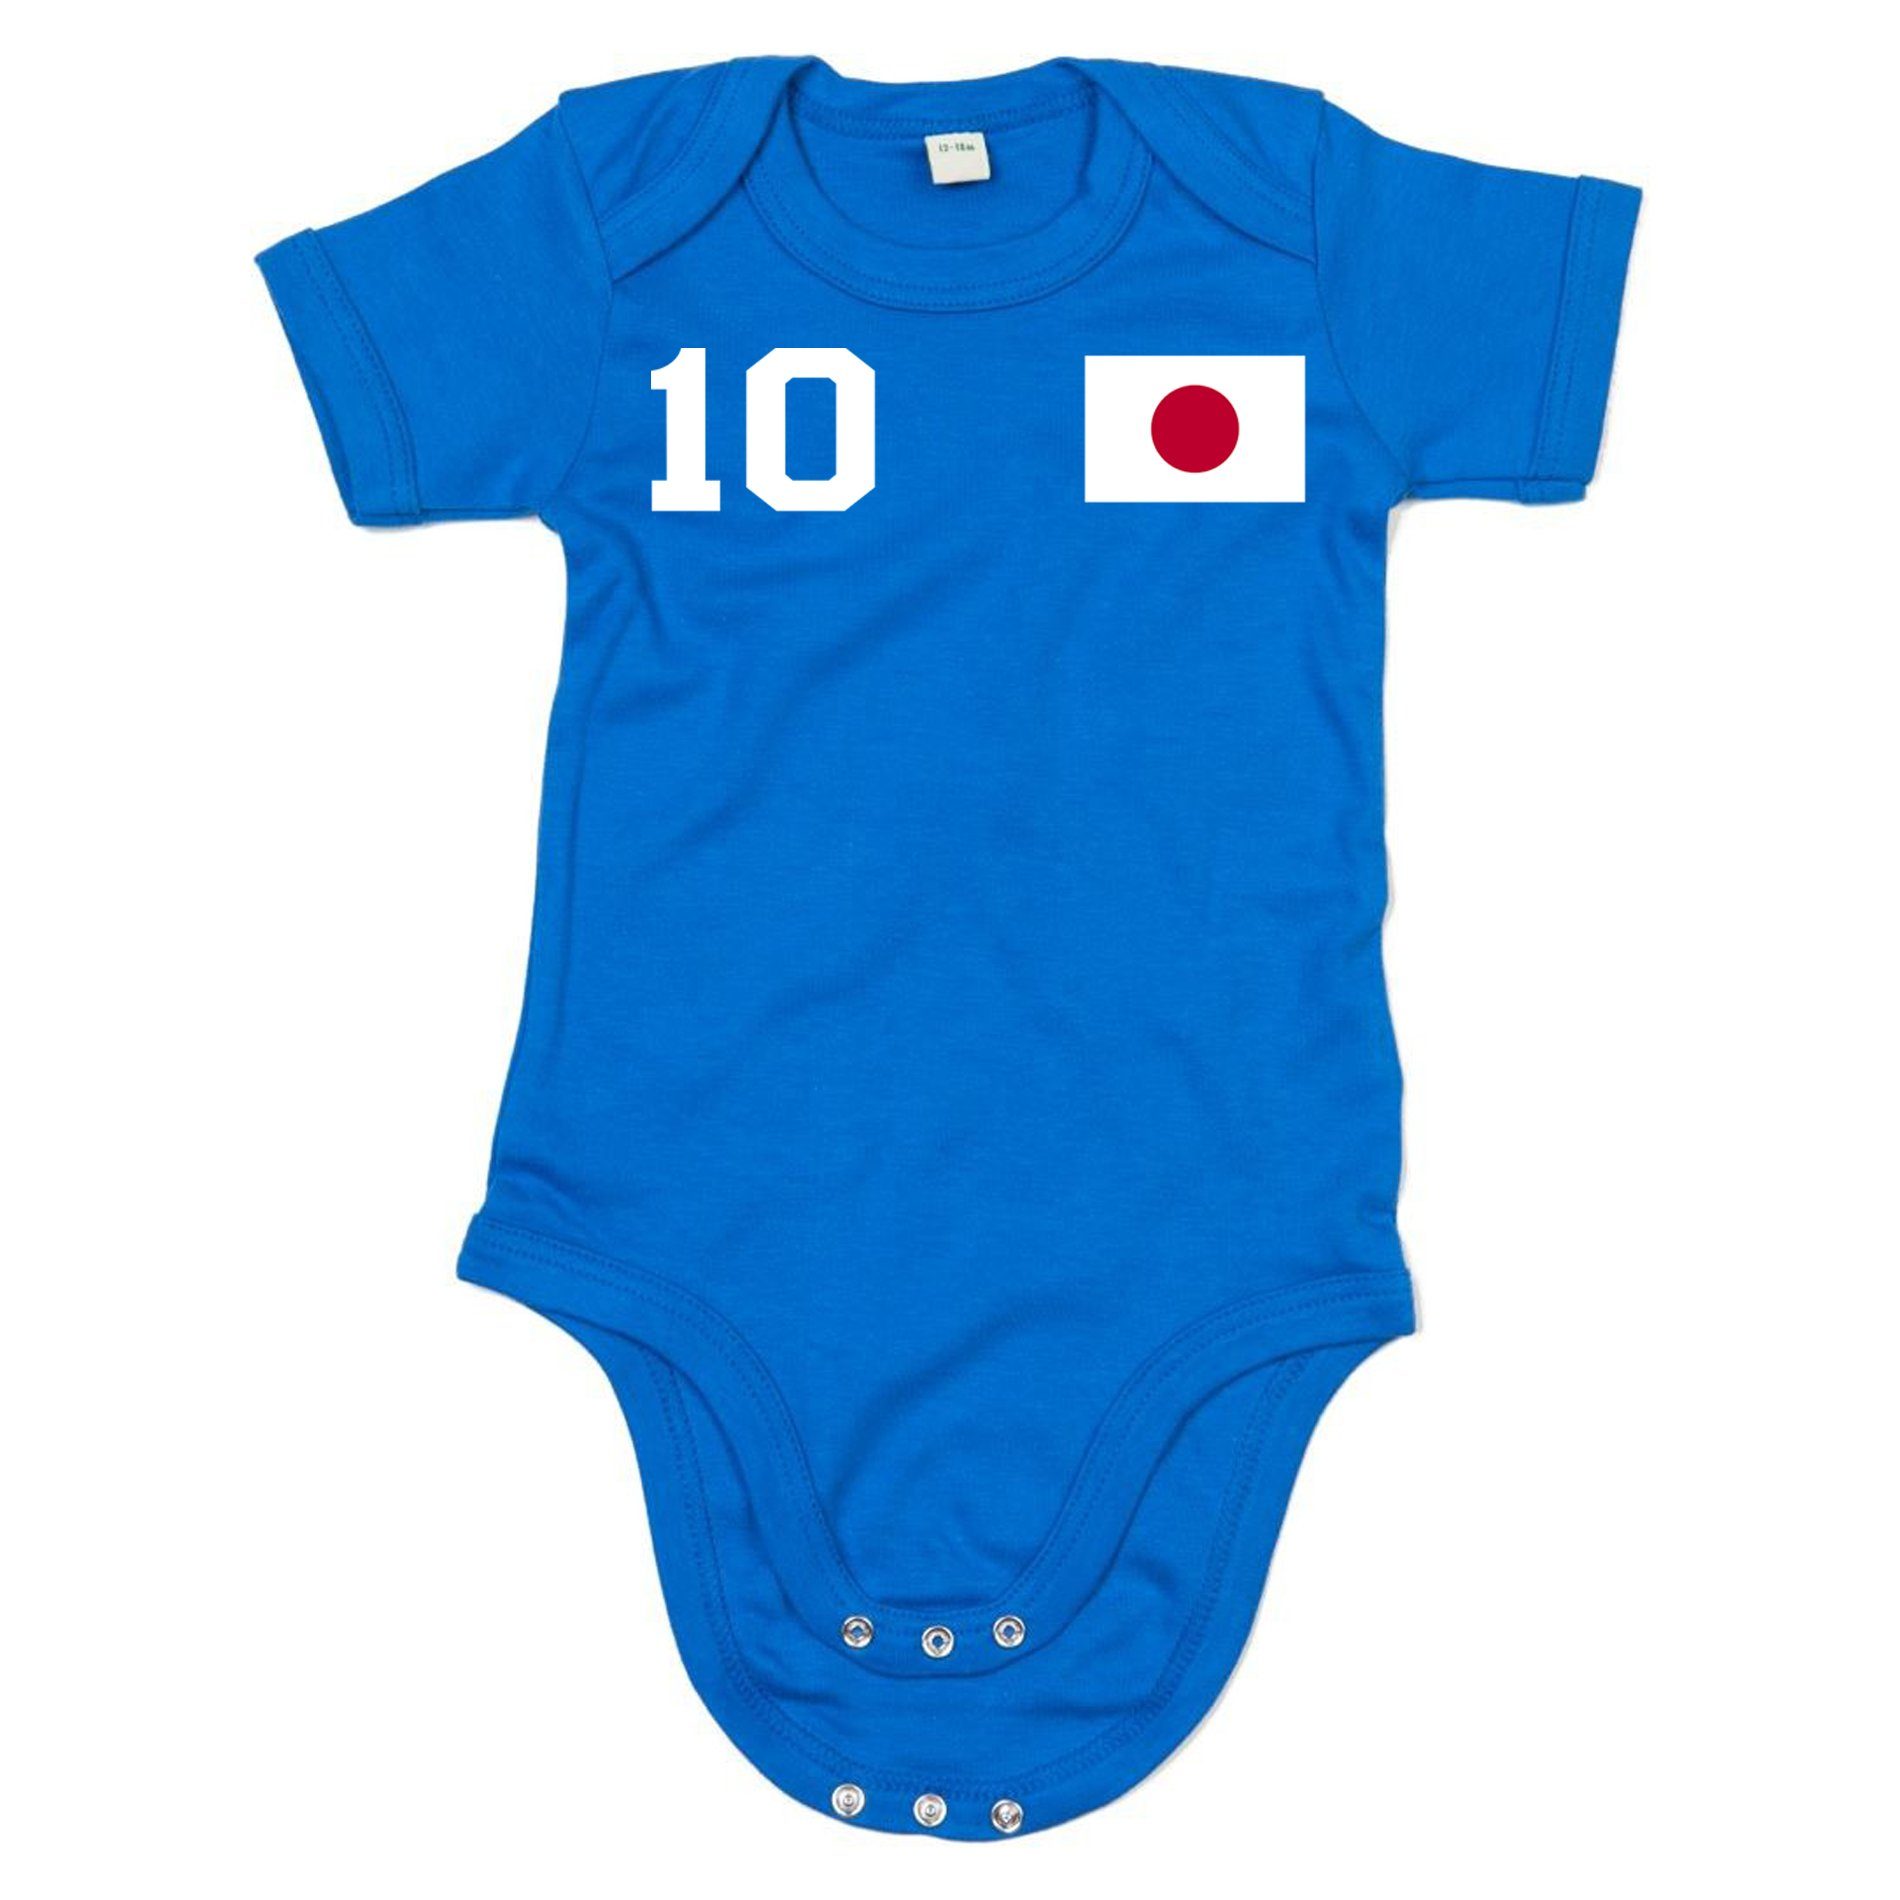 Blondie & Brownie Fußball Trikot Weiss/Blau Kinder Sport WM Strampler Asien Meister Japan Baby